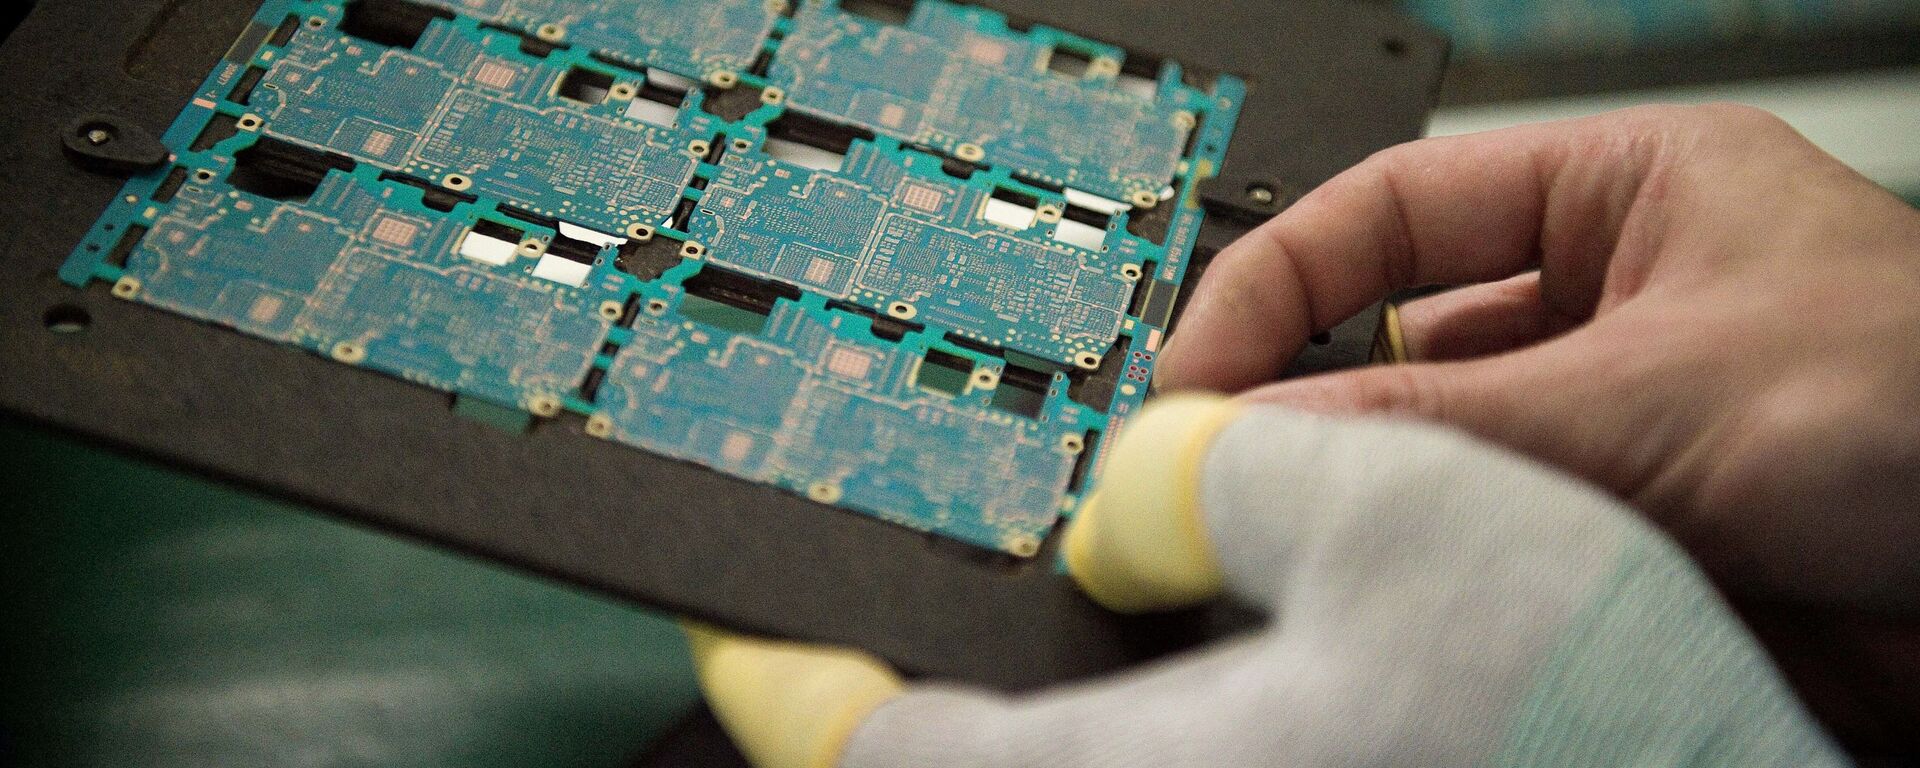 Sơ đồ các thành phần trong chip điện thoại thông minh được công nhân xử lý tại nhà máy Oppo ở Đông Quan, Trung Quốc. - Sputnik Việt Nam, 1920, 16.08.2022